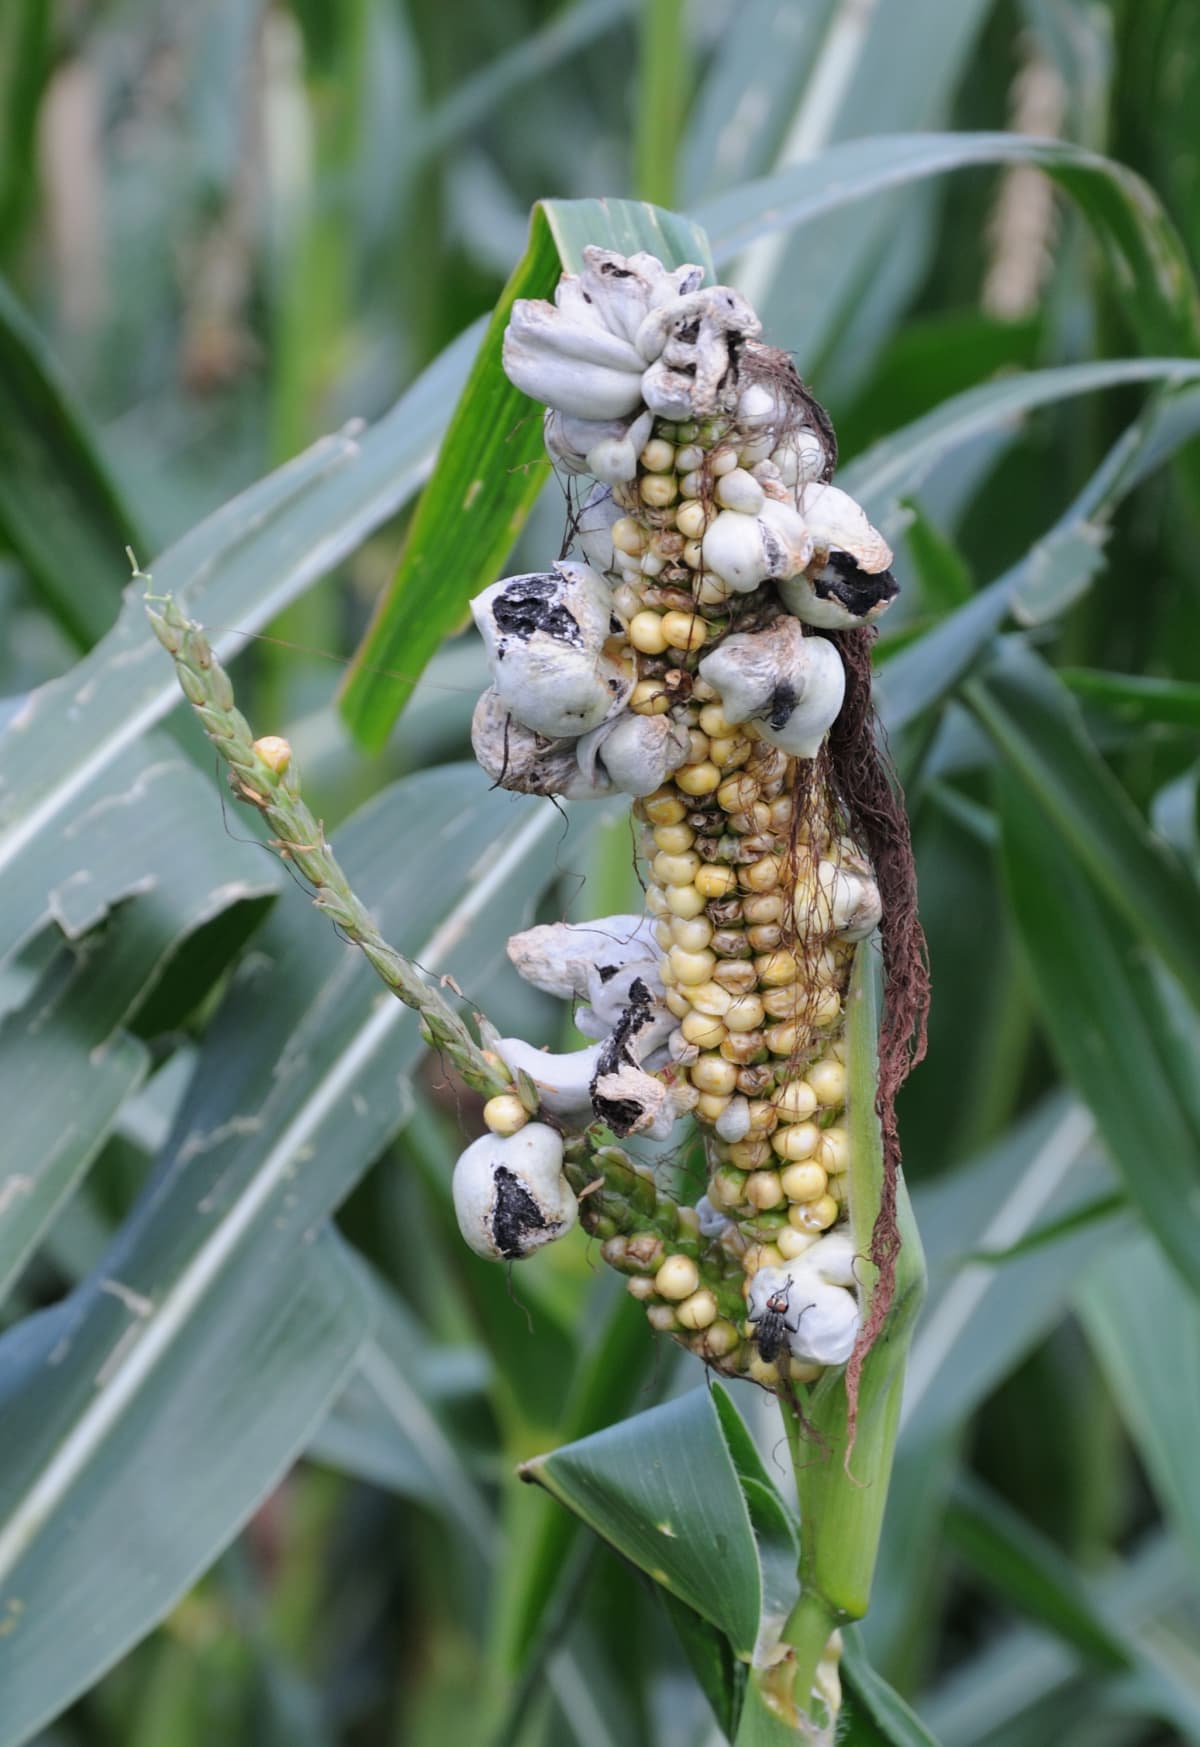 Huitlacoche growing on an ear of corn